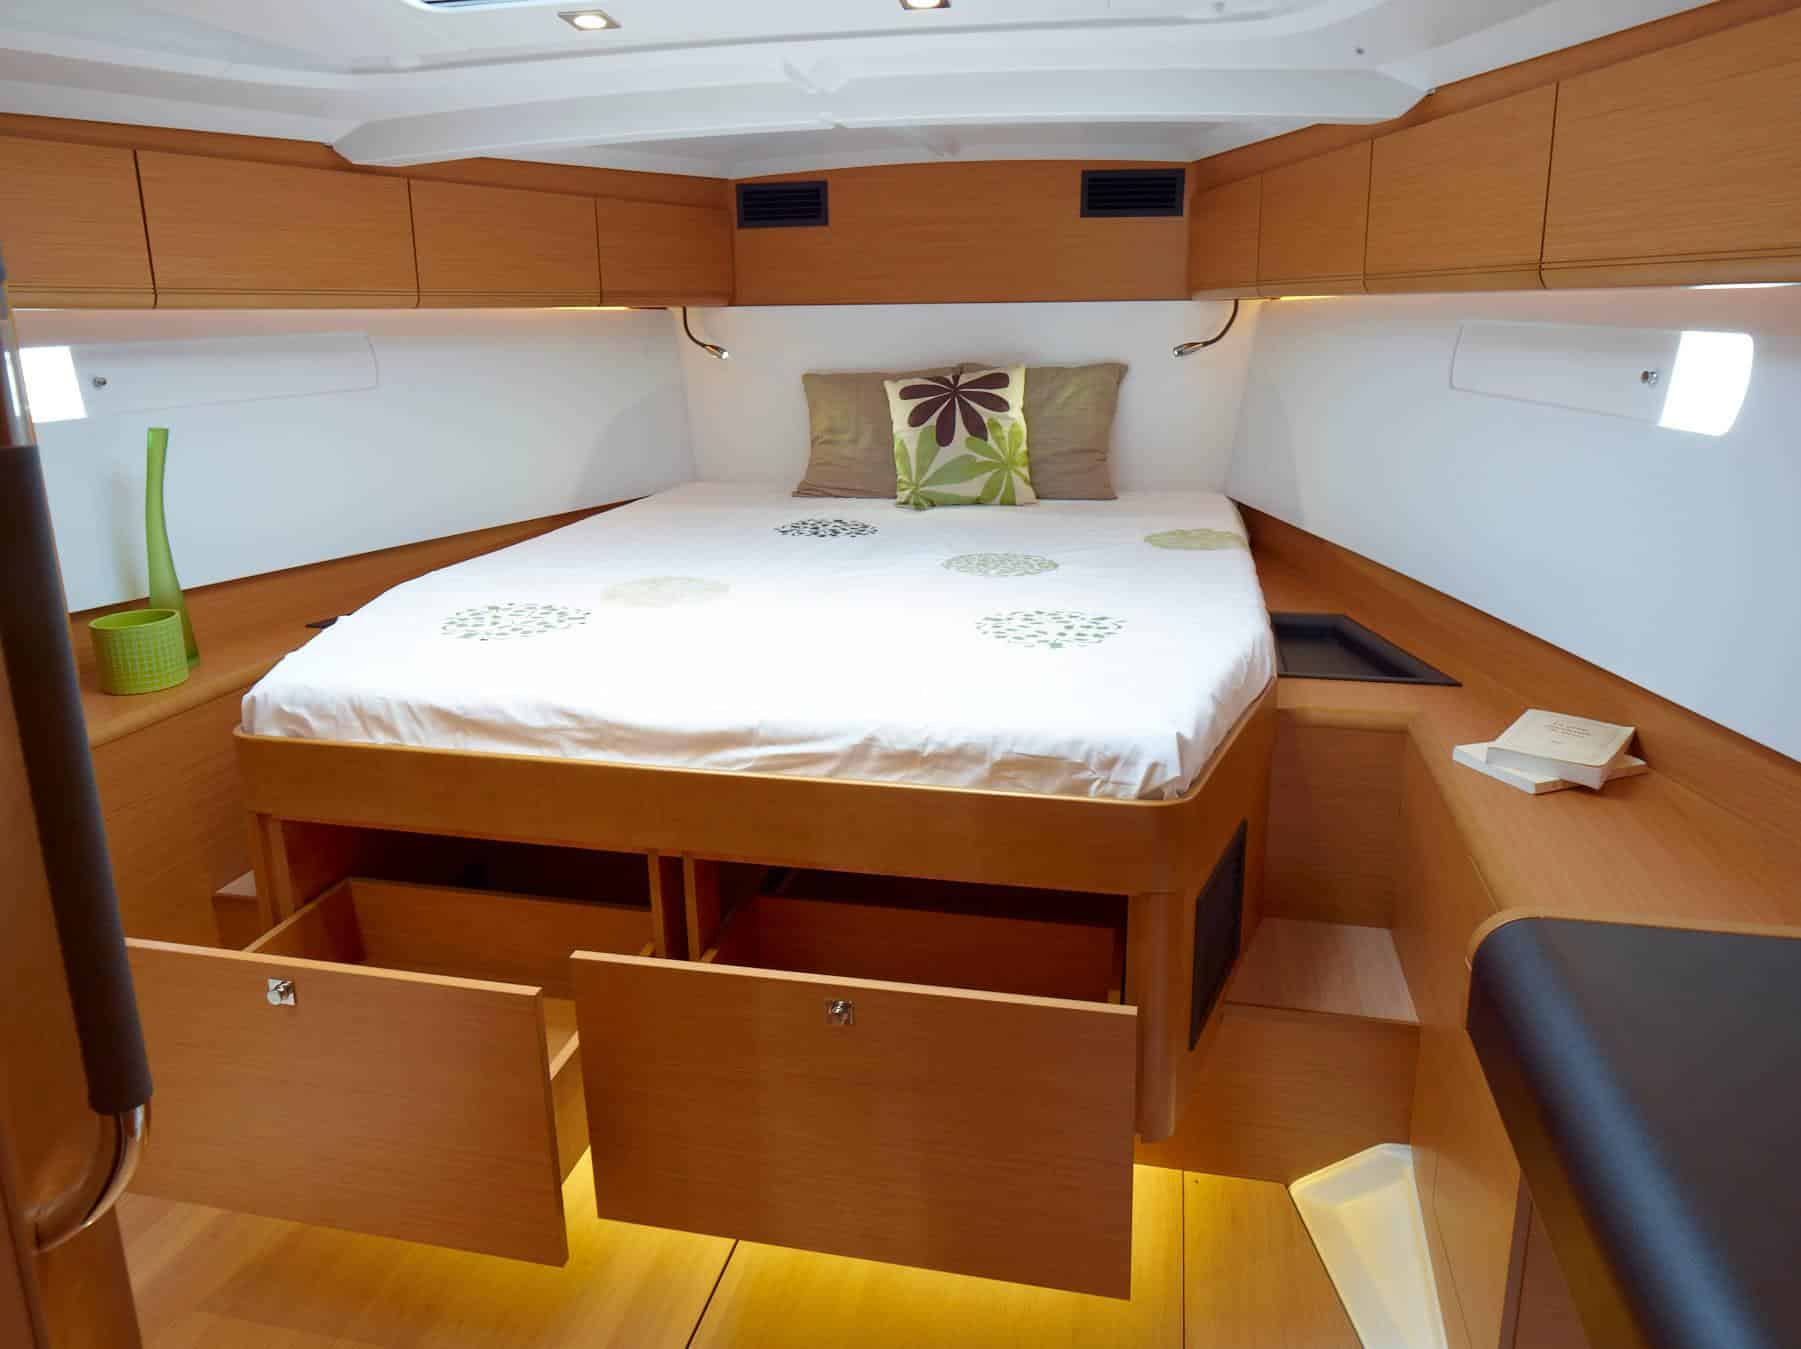 Innenansicht einer Yachtkabine mit einem sauber gemachten Doppelbett, Holzschränken und sanfter Beleuchtung. Der Raum hat ein kompaktes, modernes Design mit einem gemütlichen Ambiente, perfekt für einen Segeltörn.